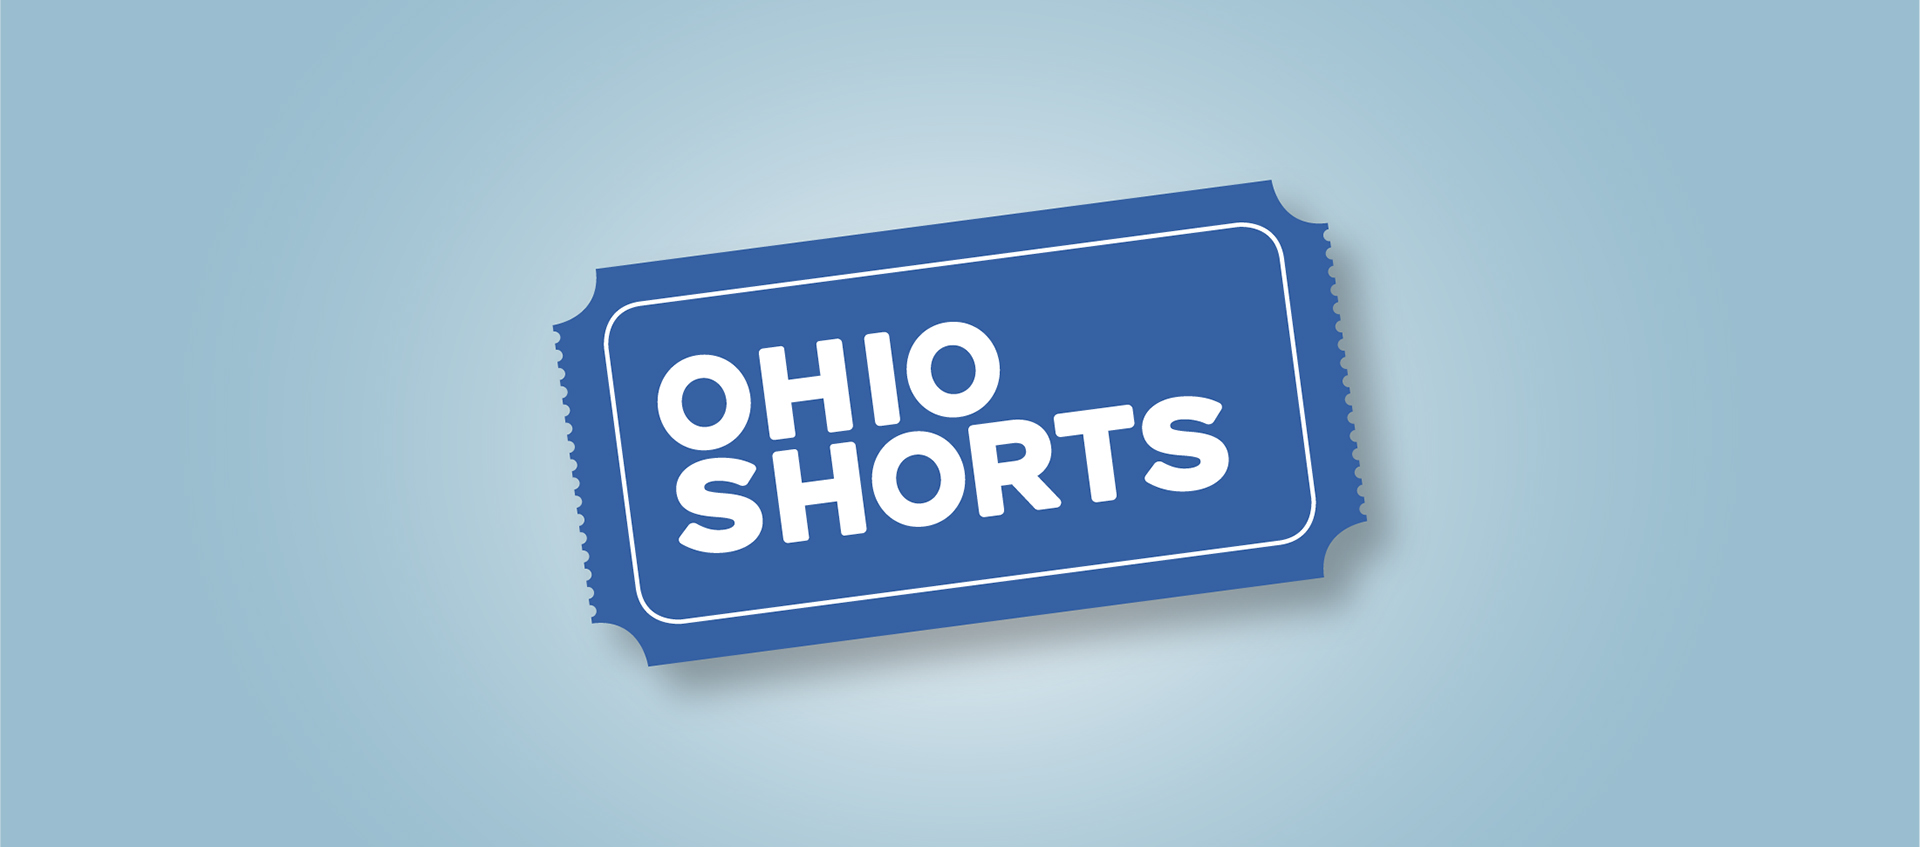 Ohio Shorts logo